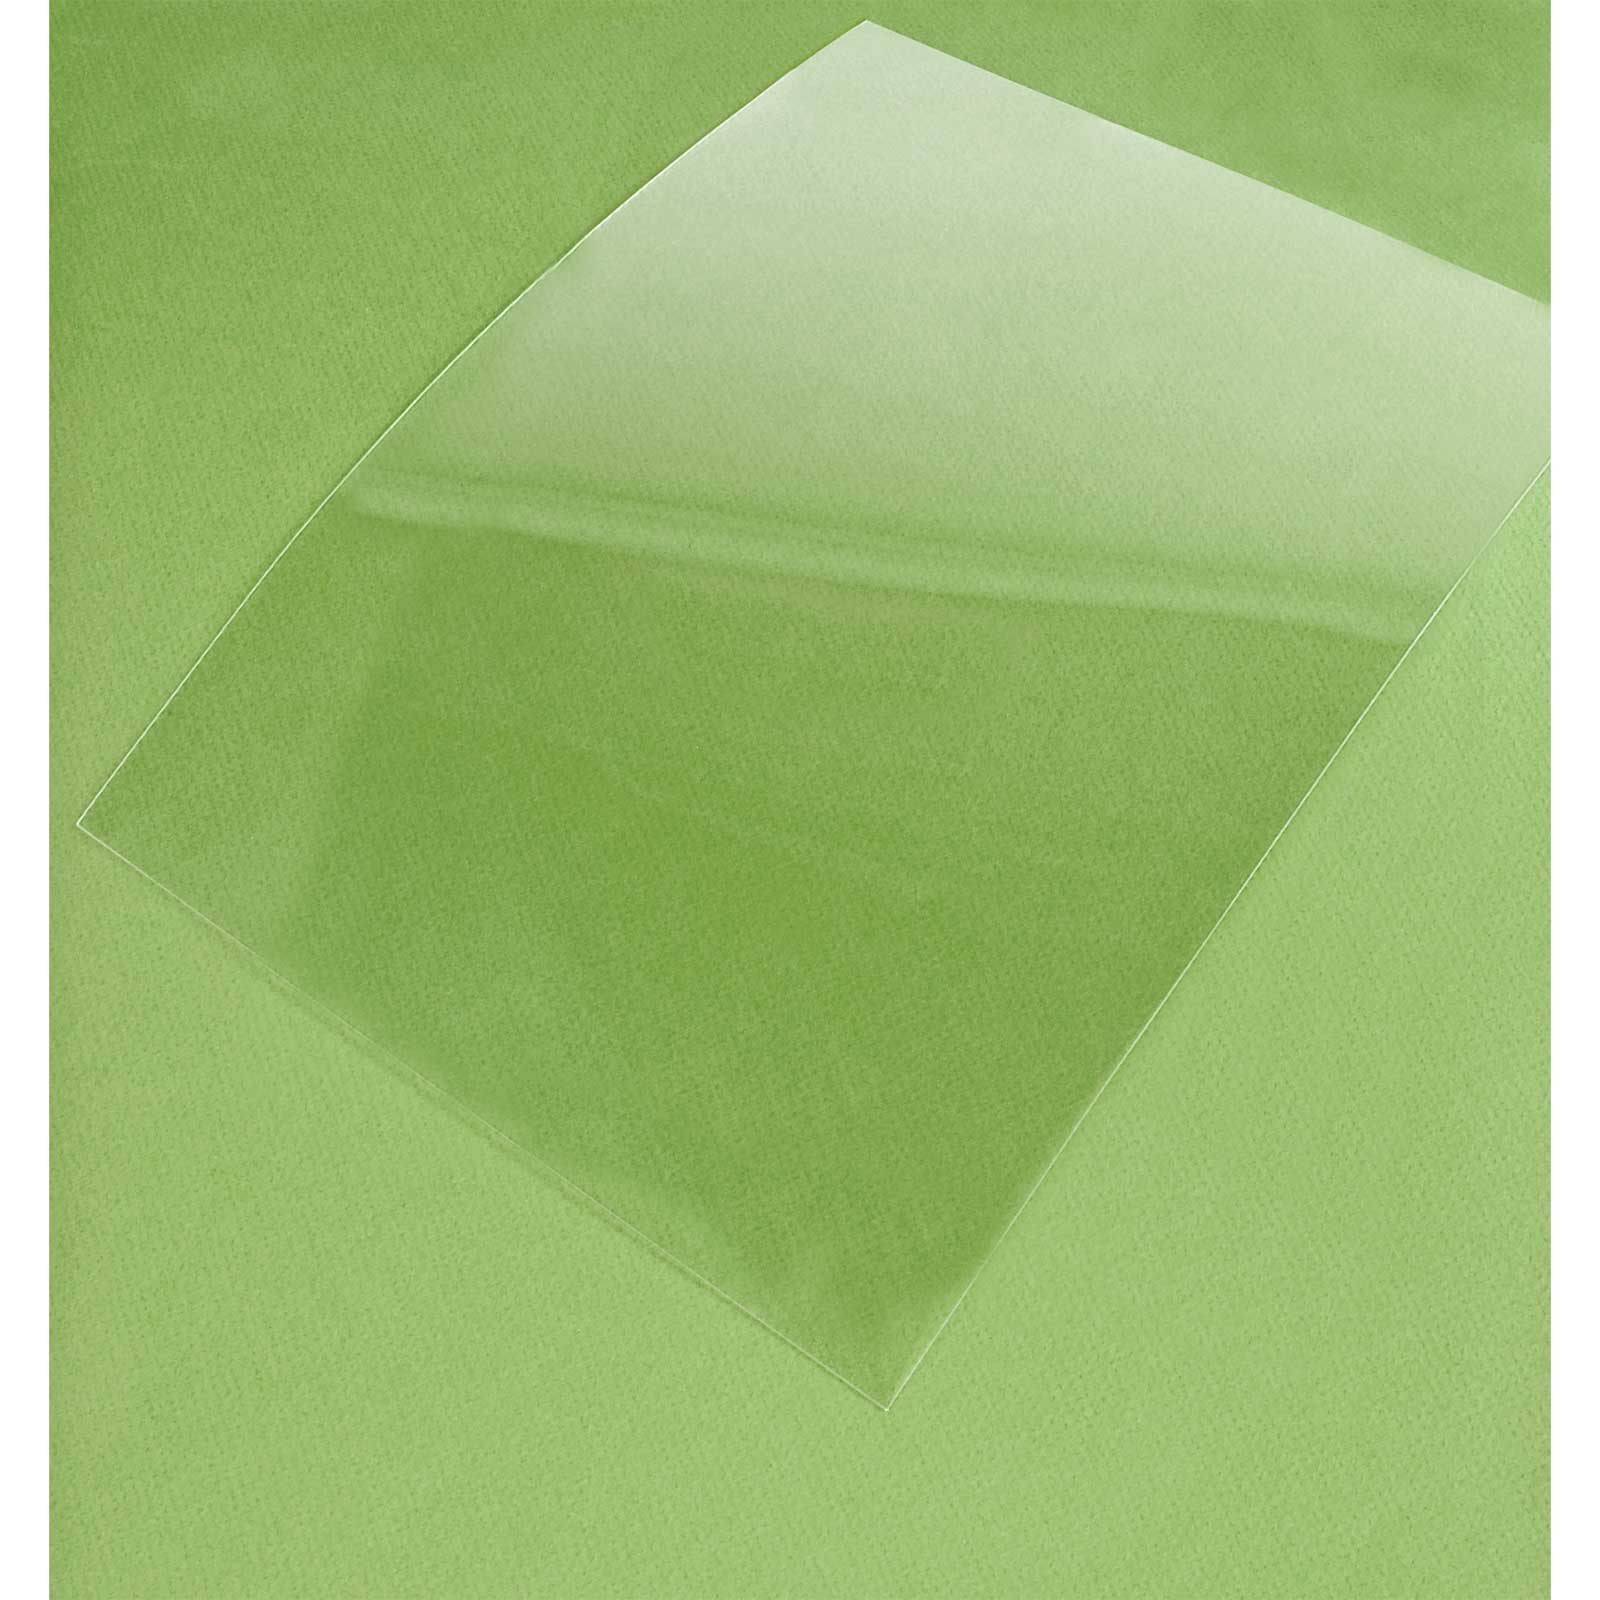 Polycarbonate Plastic Sheet, 11 x 14 x.60, 2 Pieces